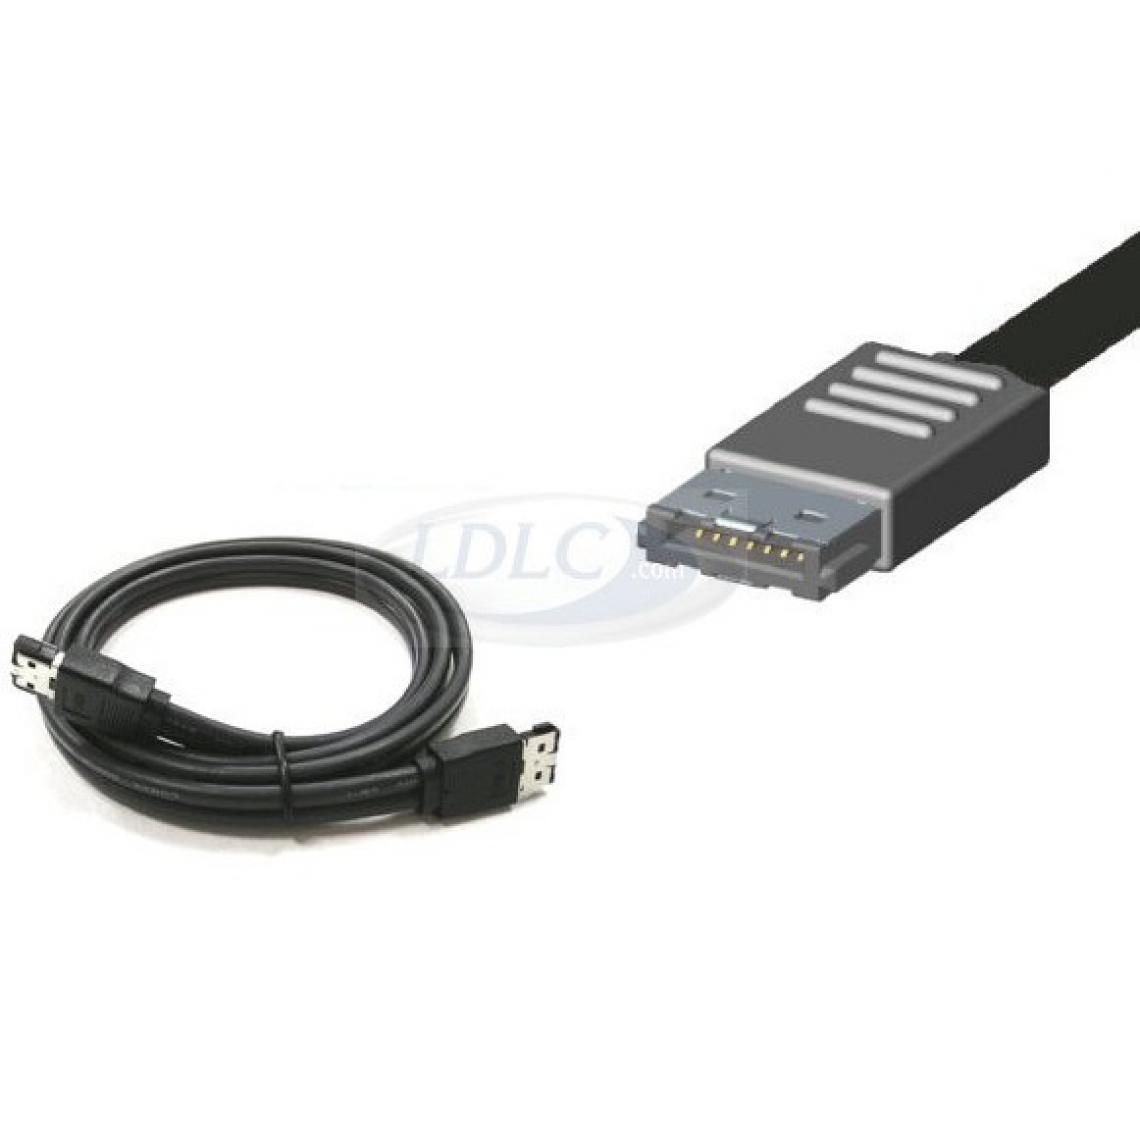 marque generique - Câble HDMI 1.4 Ethernet Channel Coudé mâle/mâle Noir - Adaptateurs